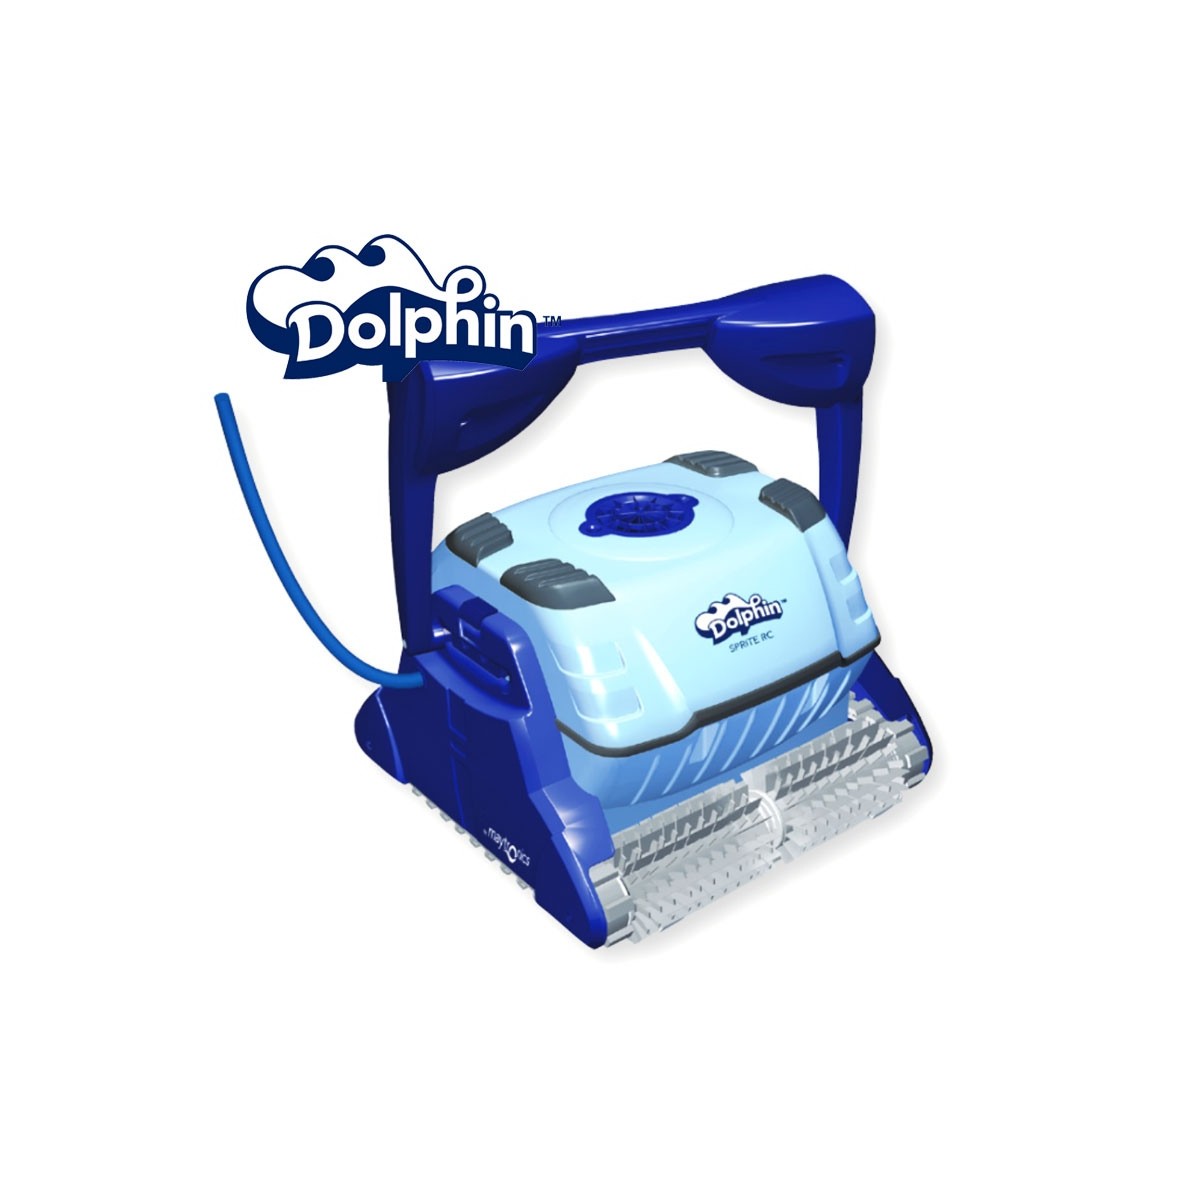 Robot piscina Dolphin SPRITE RC Maytronics con spazzole per PVC